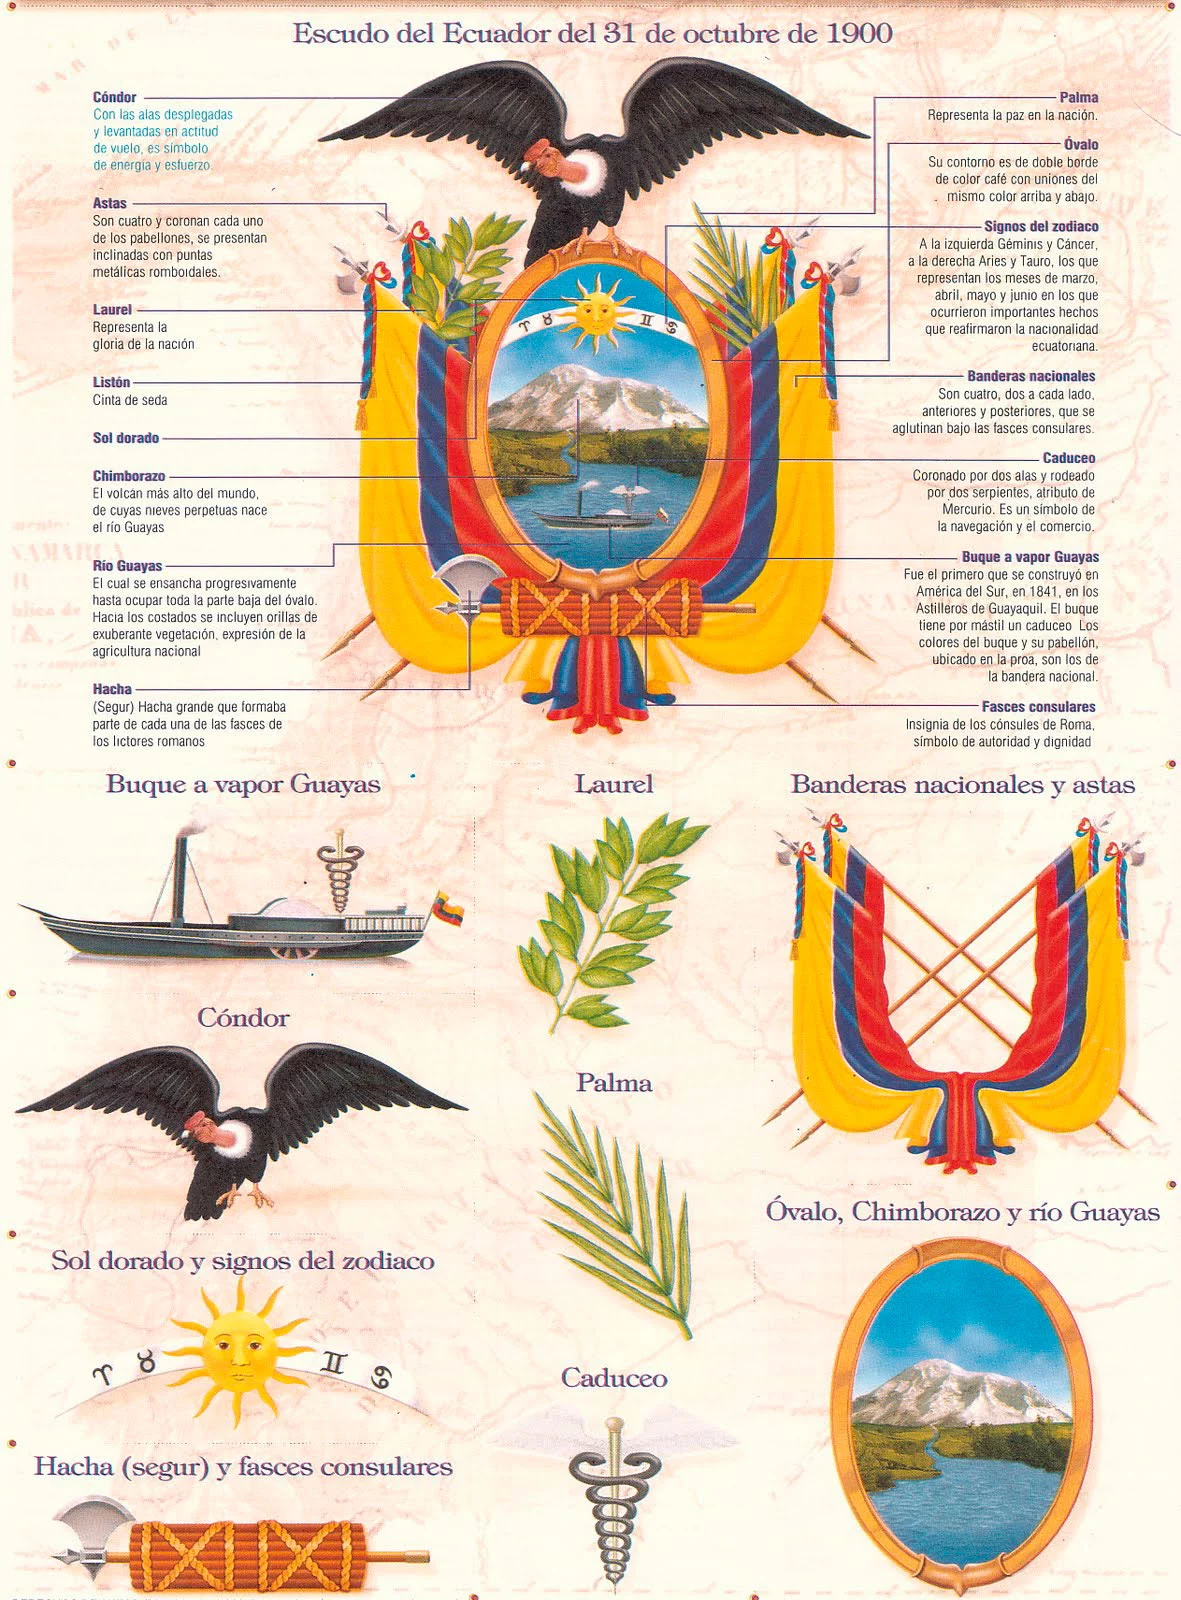 Elementos del Escudo del Ecuador (y su significado) - gucyi.com